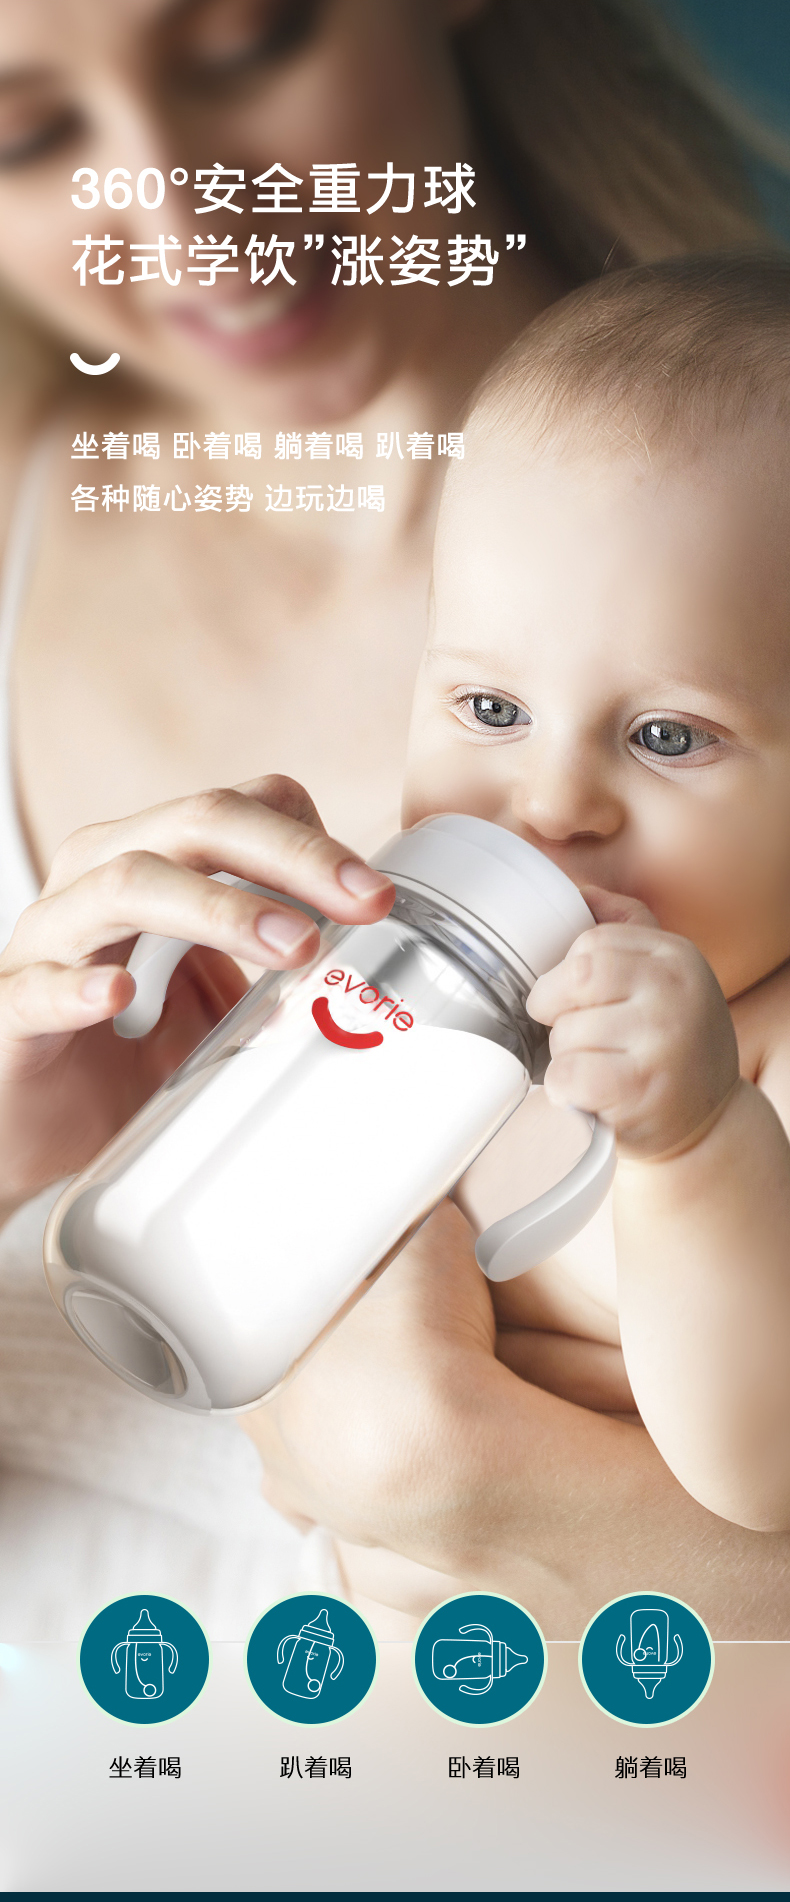 爱得利(IVORY) 奶瓶 婴儿奶瓶 带手柄带重力球特丽透宽口径宝宝奶瓶300ml白银灰(自带十字孔)